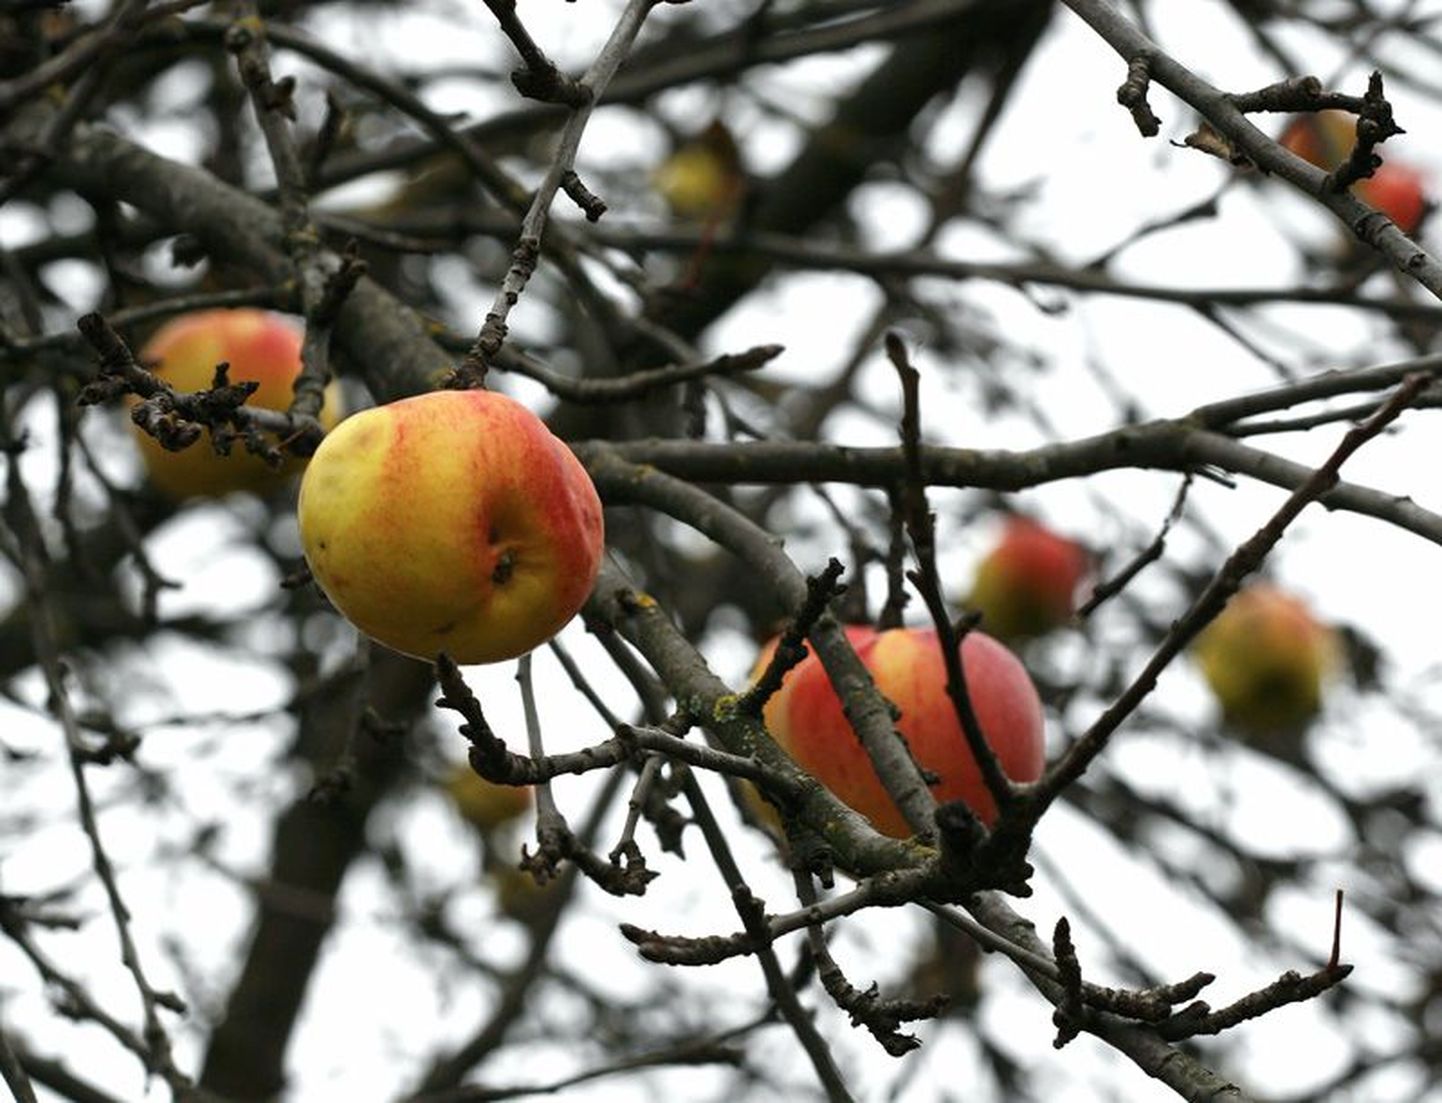 Õunad, mis puu otsast veel alla potsatavad, võiks ära korjata, et vältida puuviljamädaniku teket.